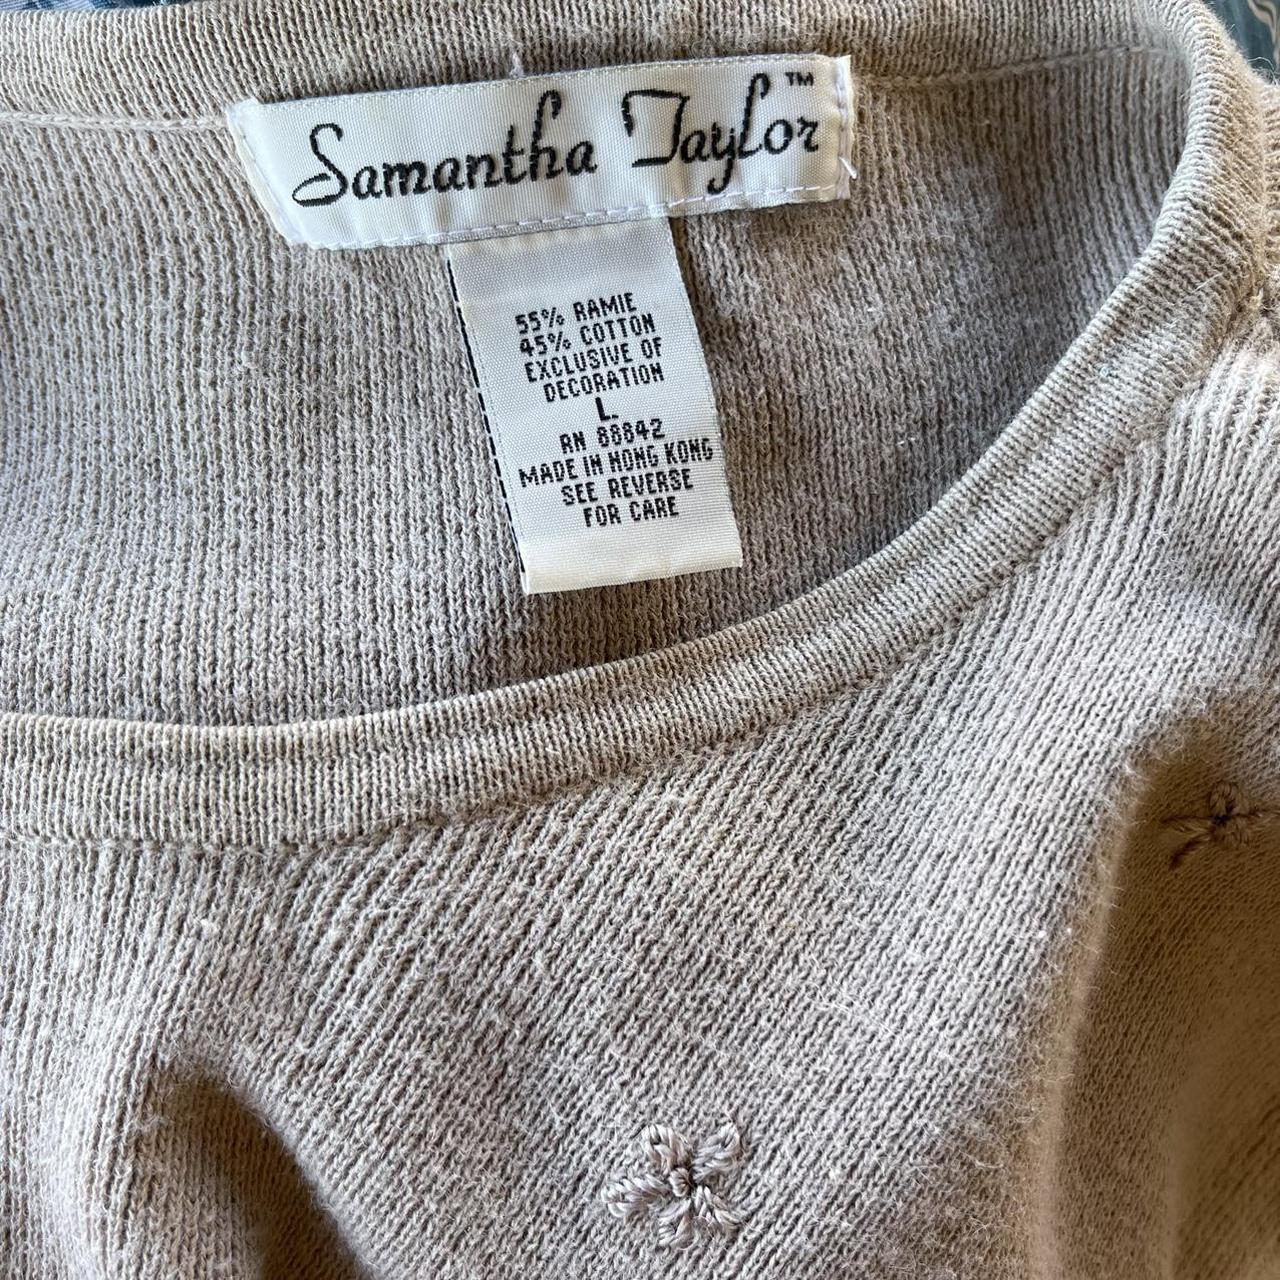 Vintage beige Samantha Taylor Sweater Has some... - Depop